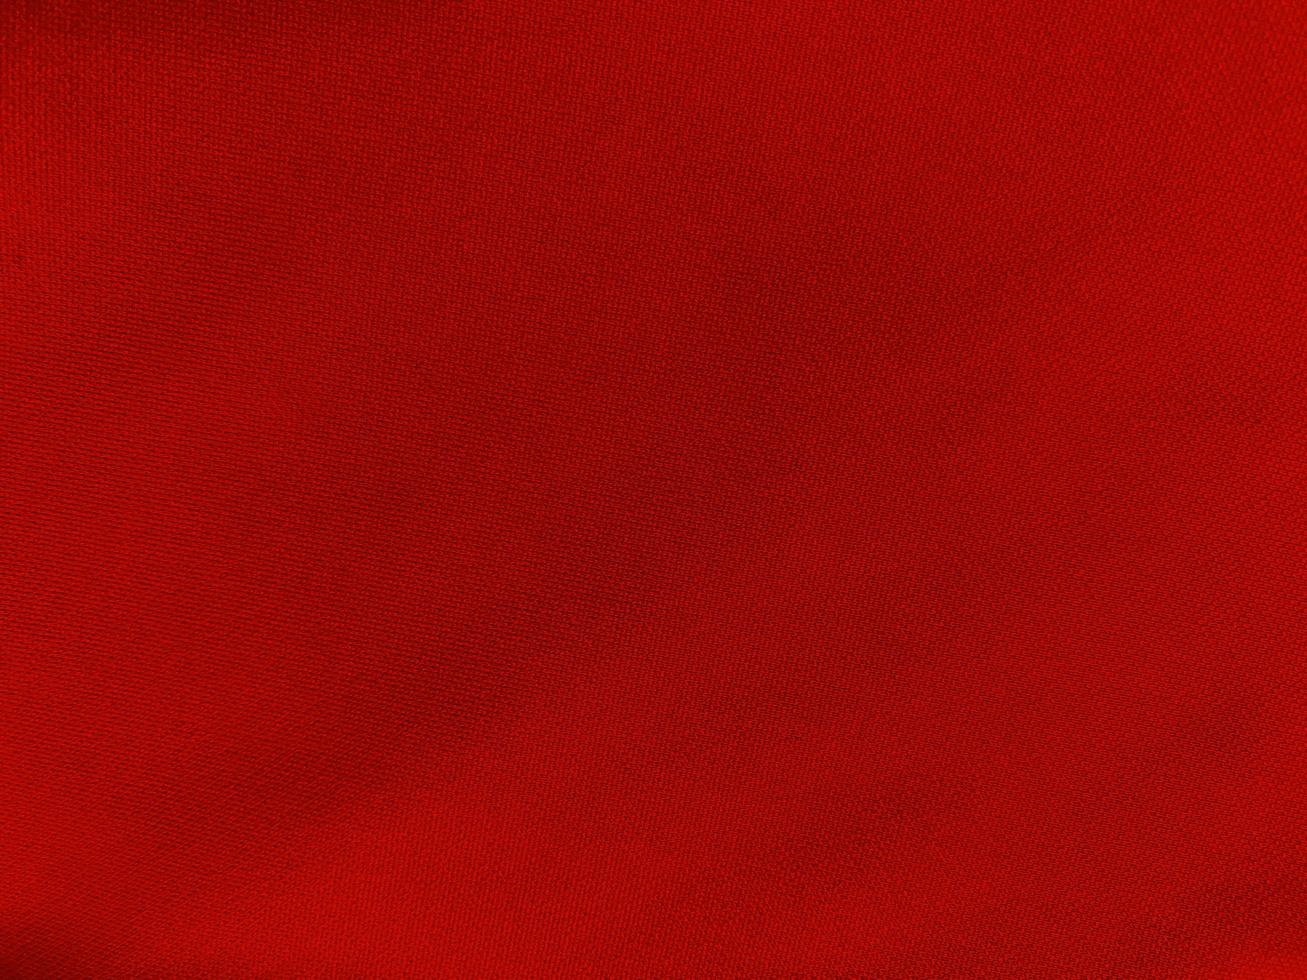 textura de tela de algodón rojo utilizada como fondo. fondo de tela roja vacía de material textil suave y liso. hay espacio para el texto.. foto